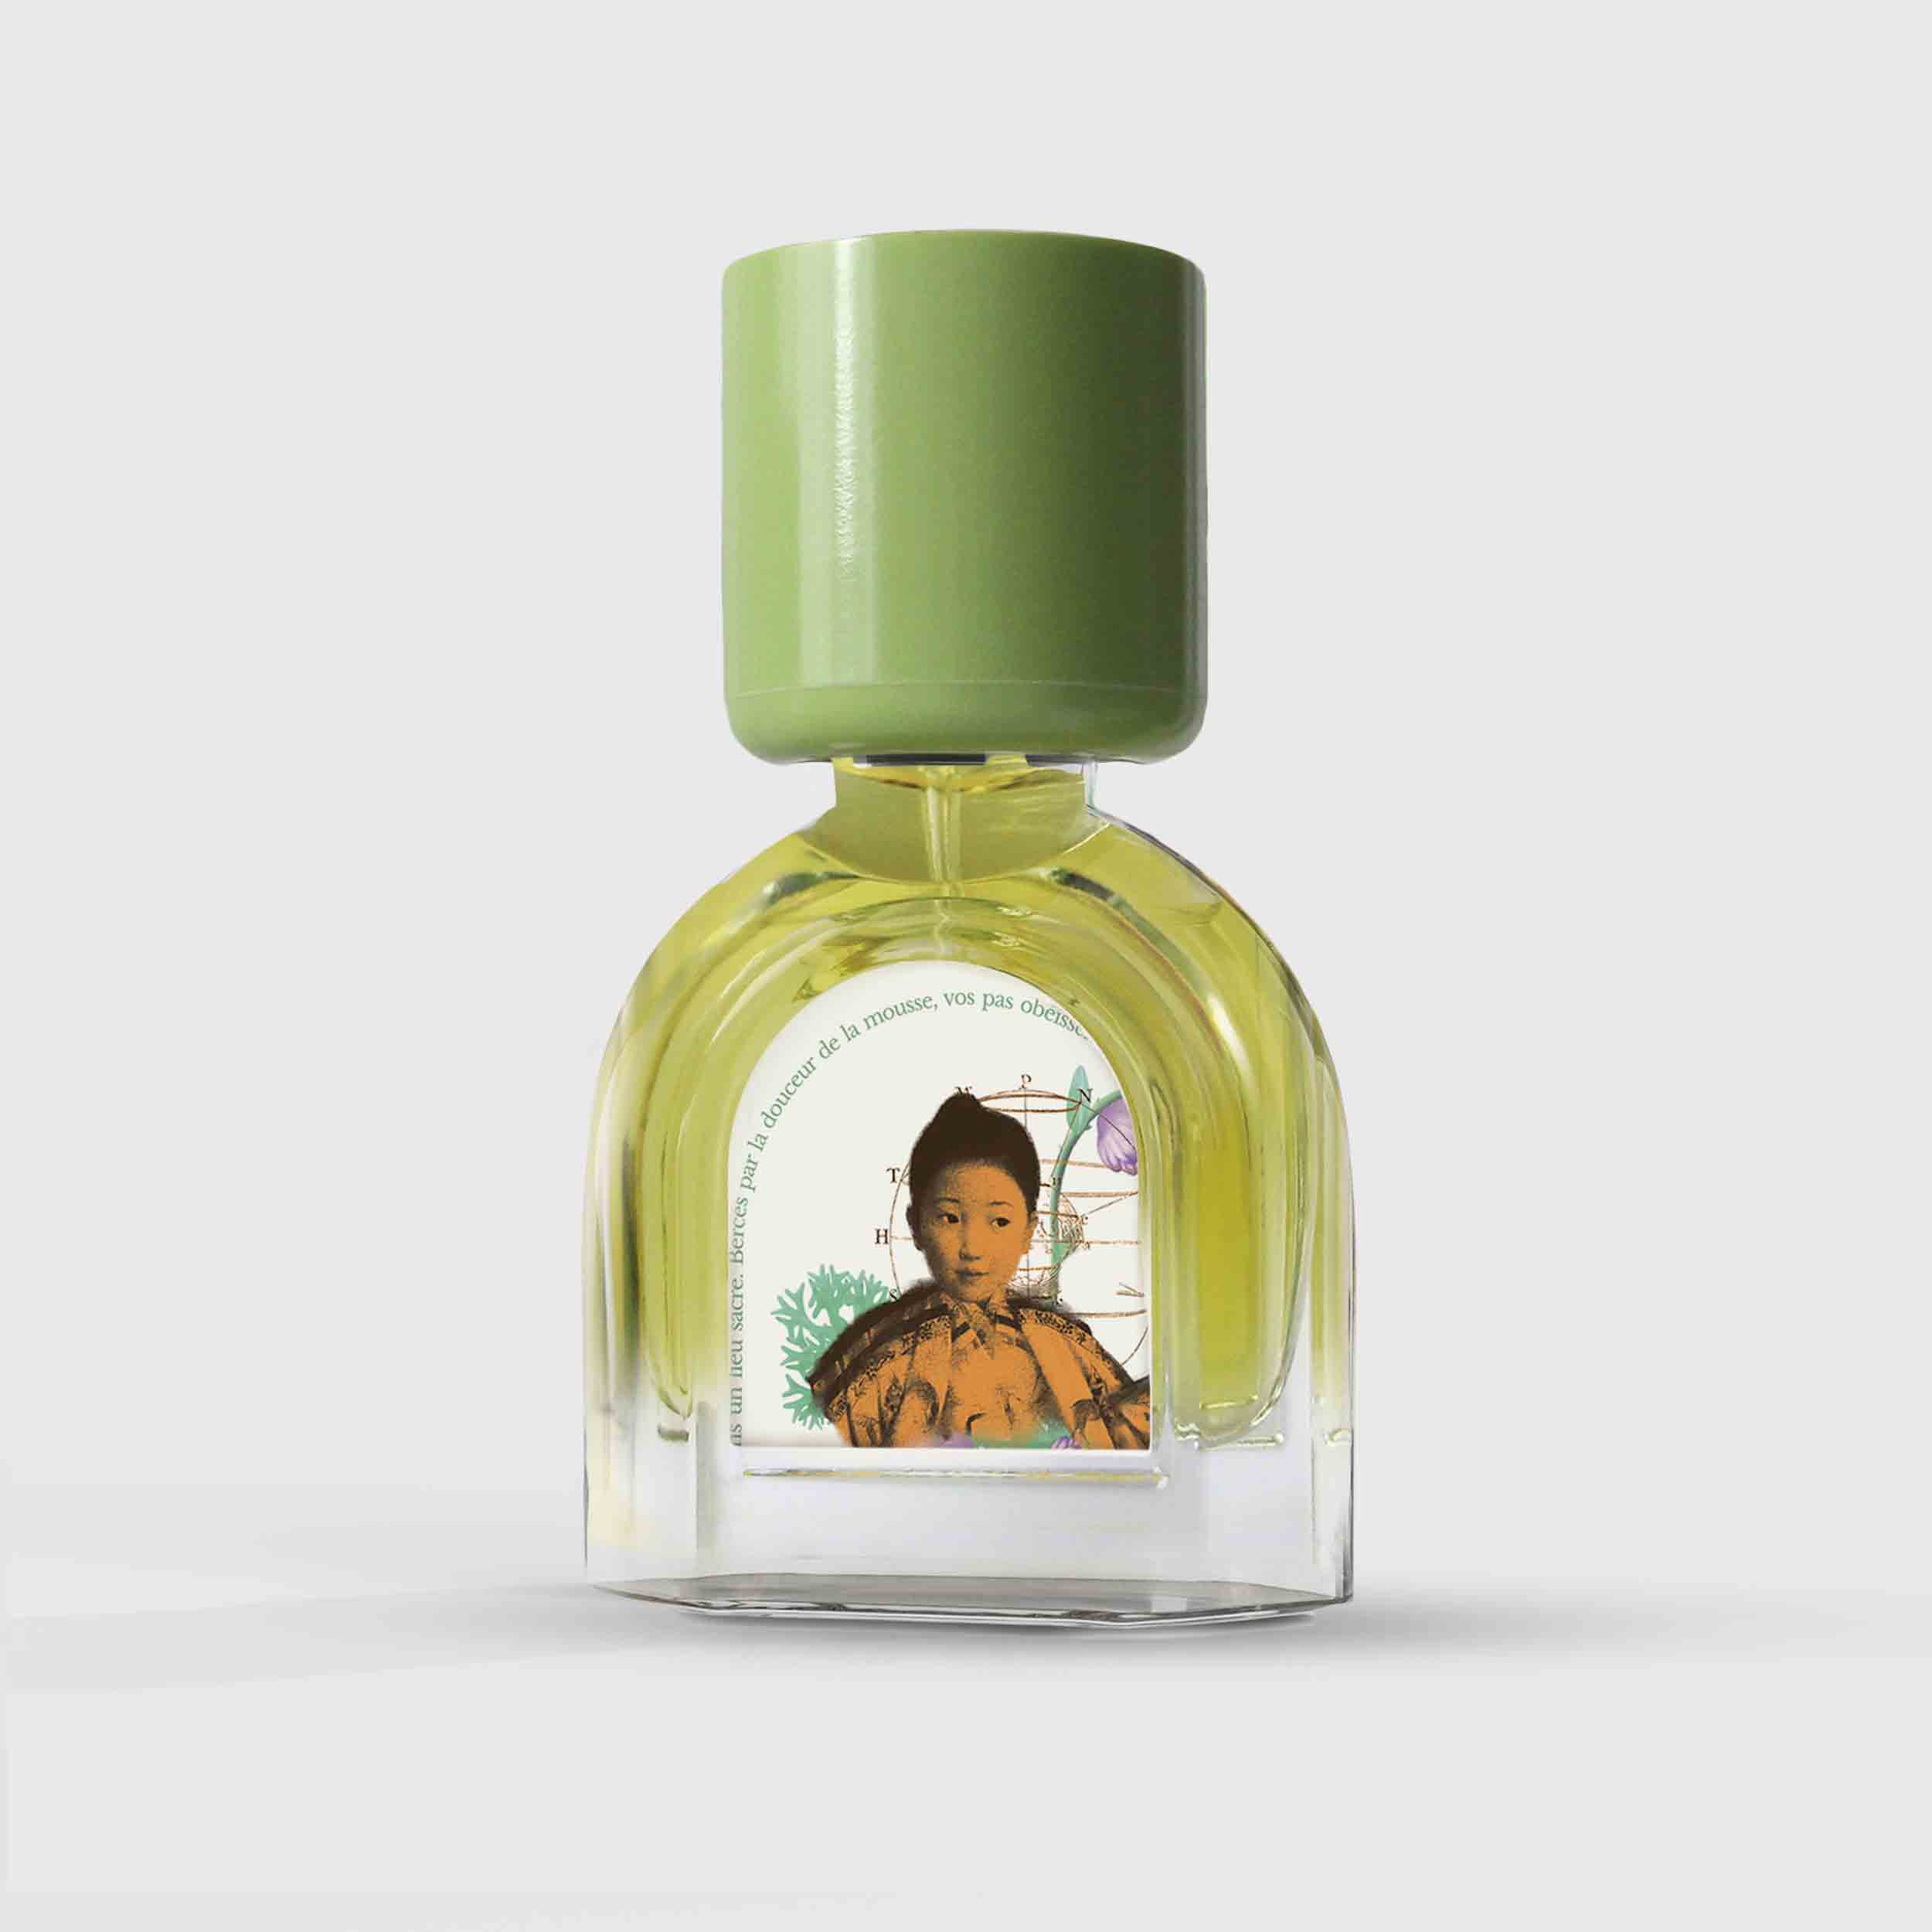 Mousse Arashiyama Eau de Parfum 15ml Bottle by Le Jardin Retrouvé